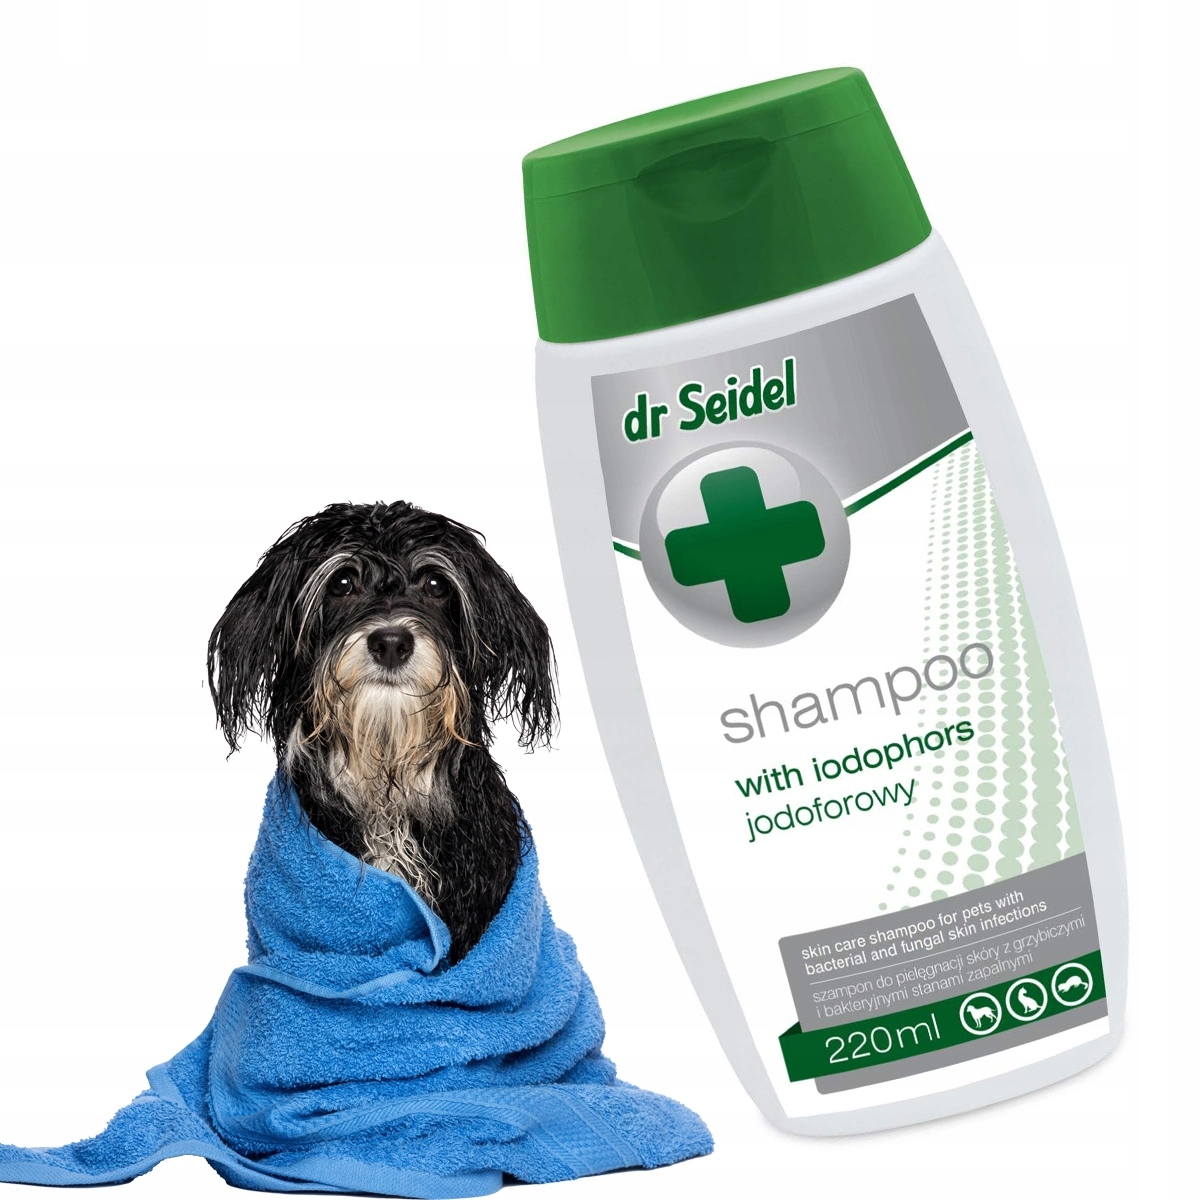 szampon dermatologiczny dla psa drapanie